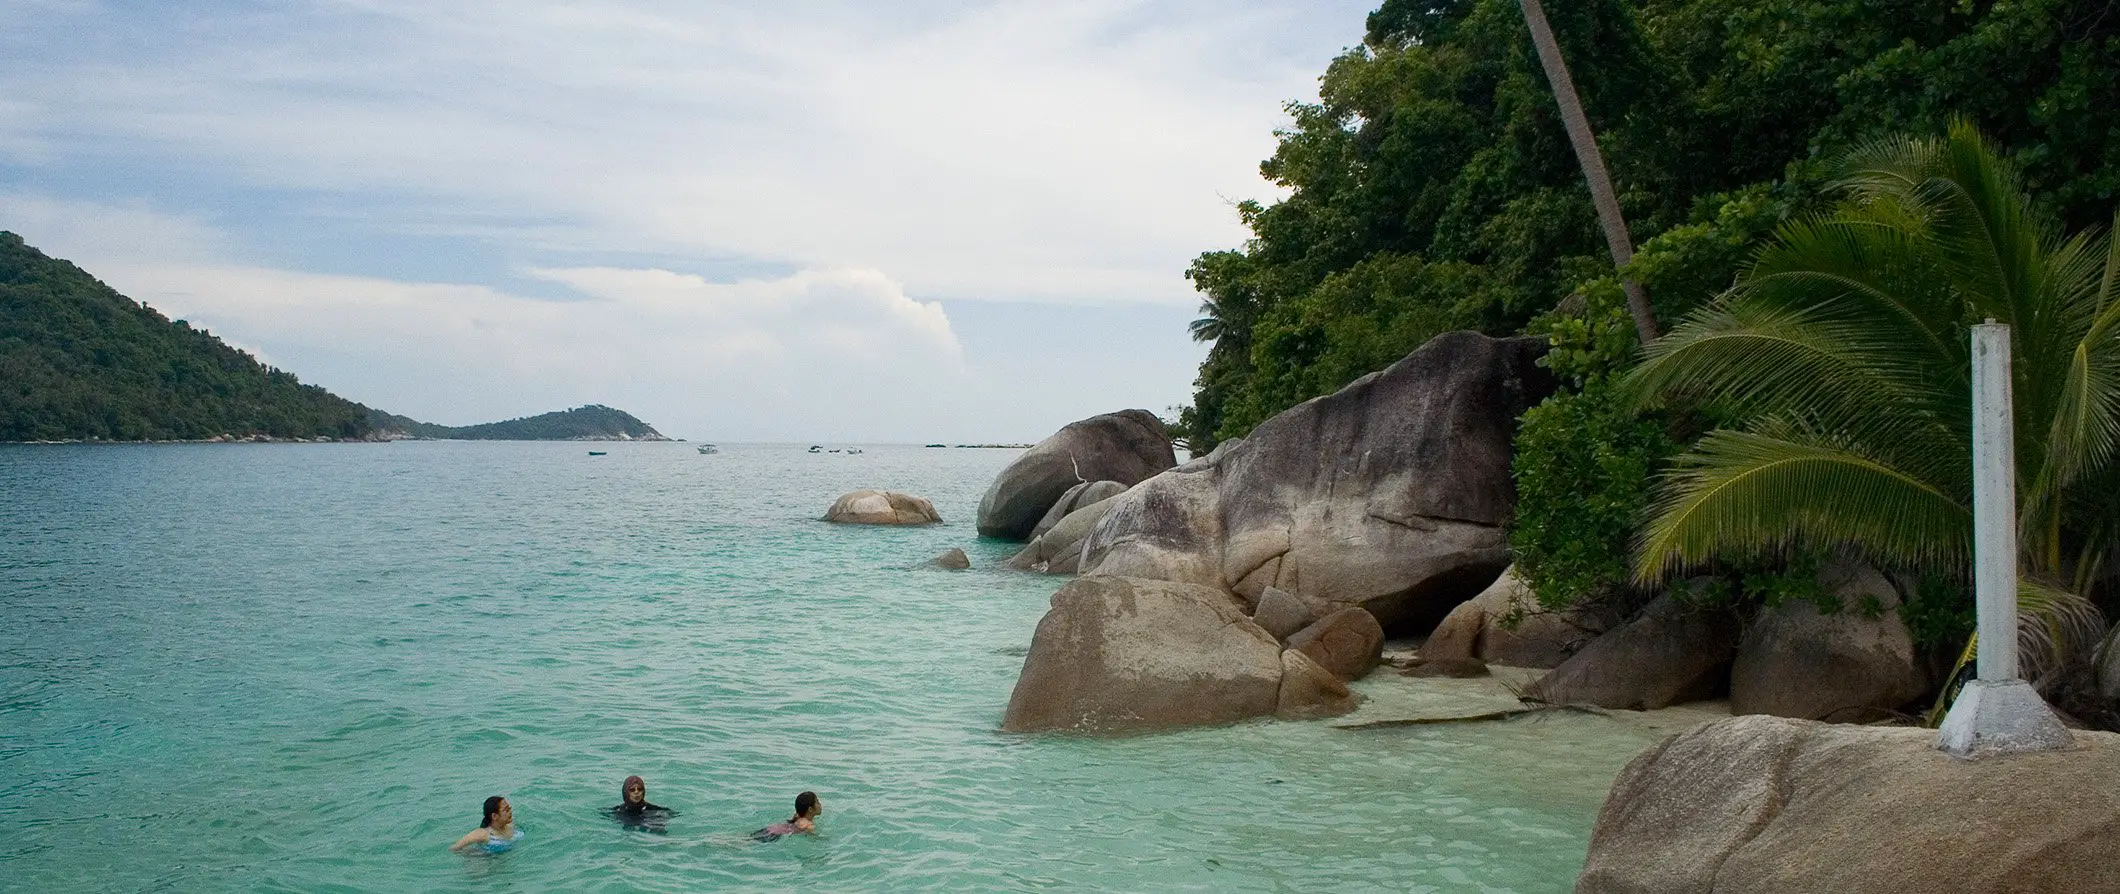 Planifica una aventura inolvidable de vacaciones en Malasia